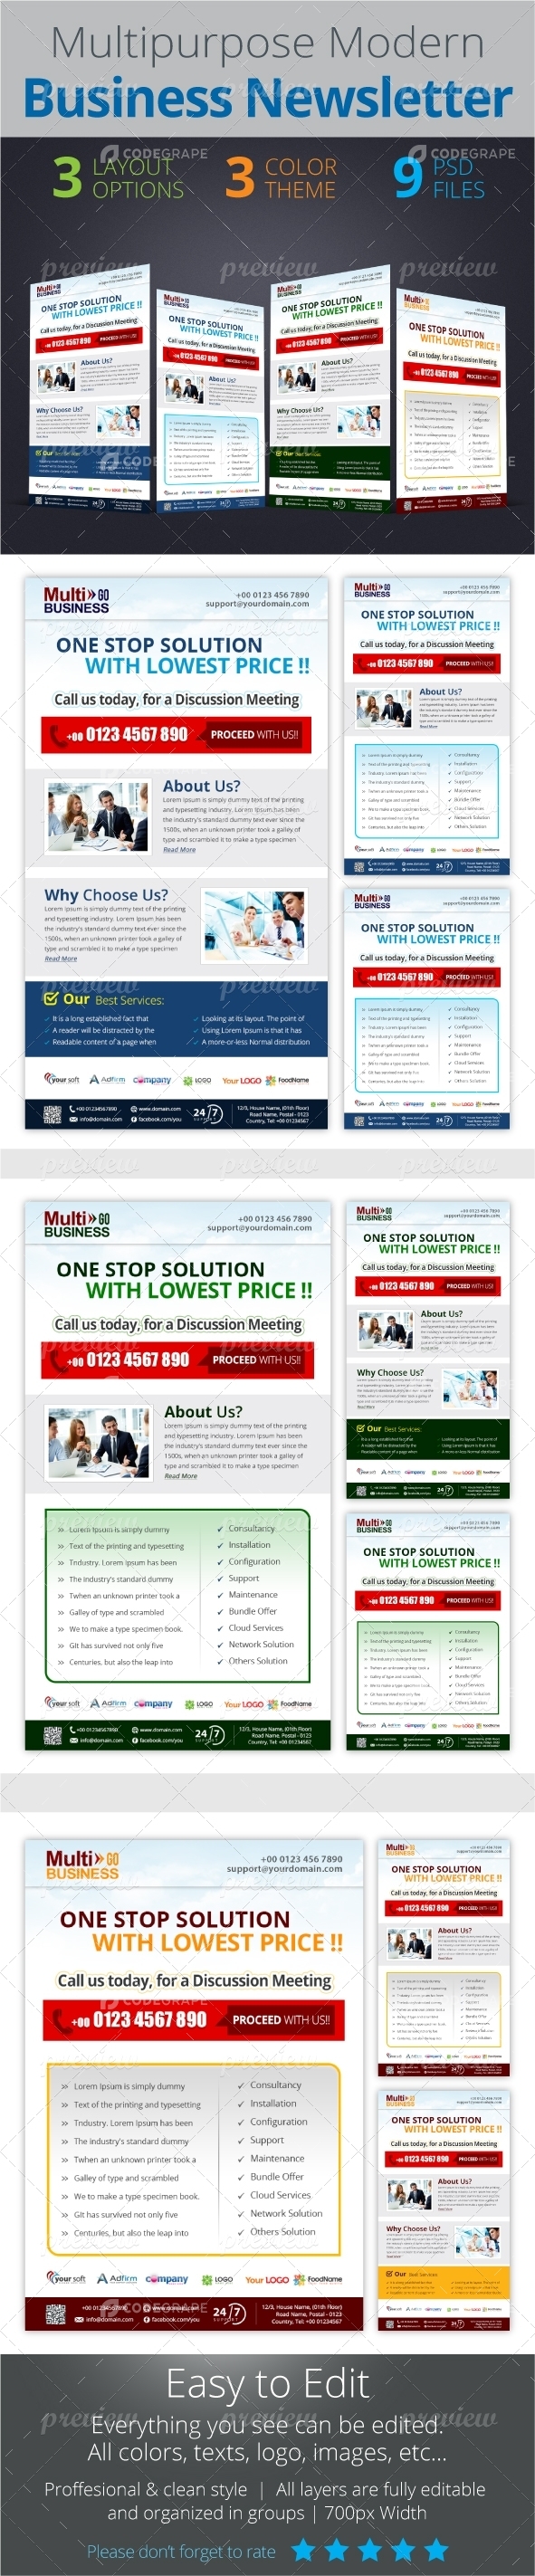 Multipurpose Modern Business Newsletter